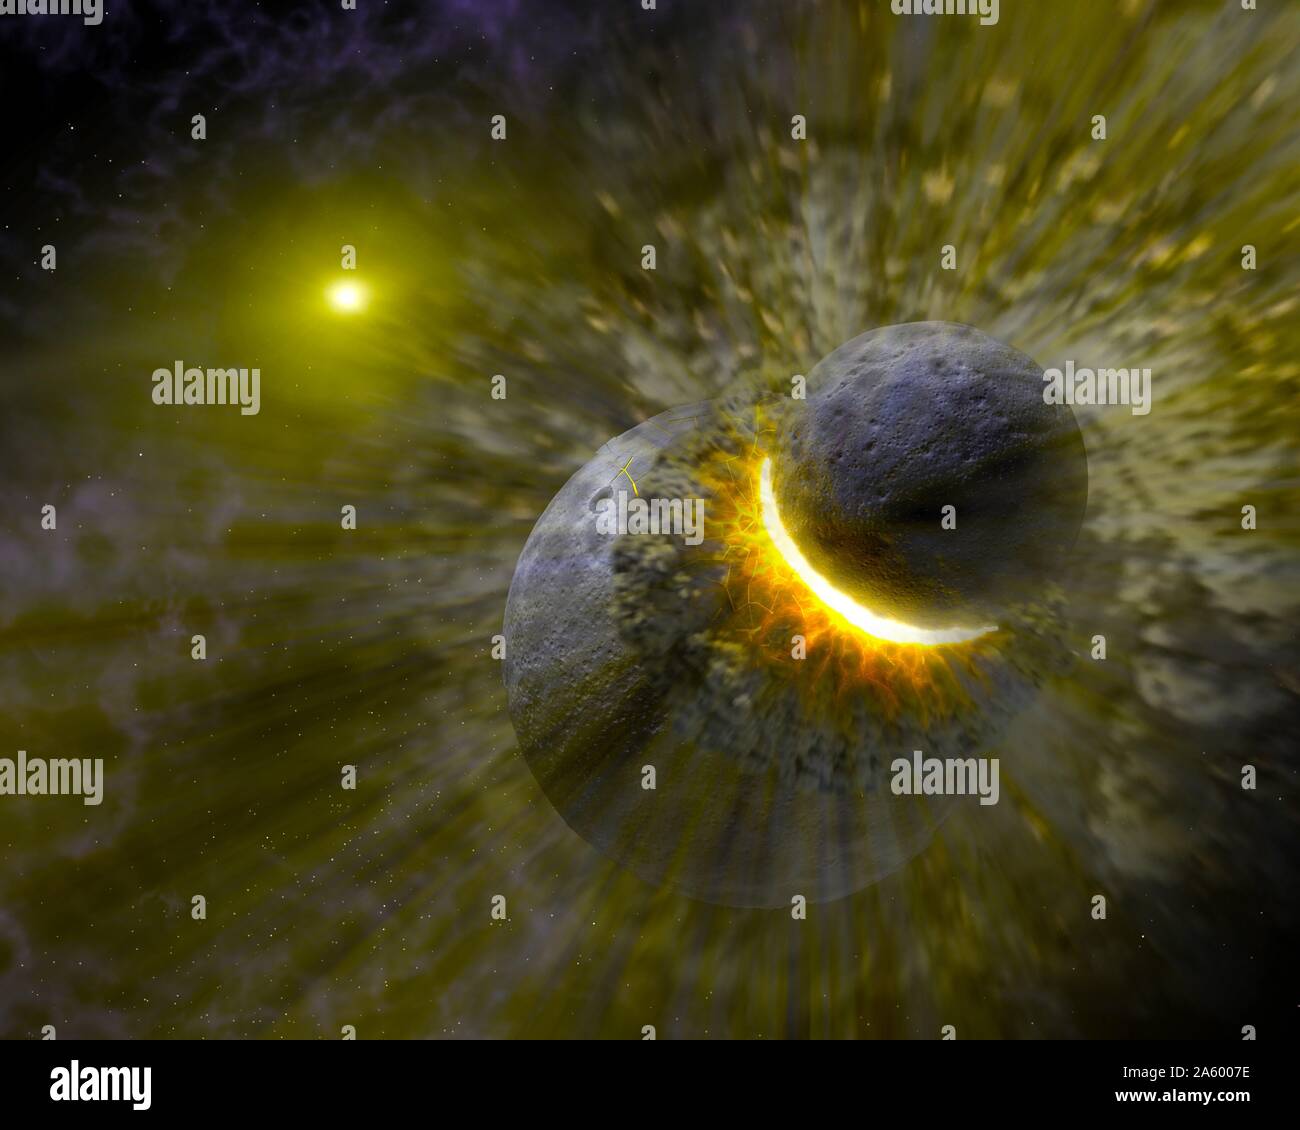 Concetto di artista illustra come una massiccia collisione di oggetti forse grande come il pianeta Plutone fracassato insieme per creare l'anello parapolvere attorno alla stella vicina Vega. Datata 2005 Foto Stock